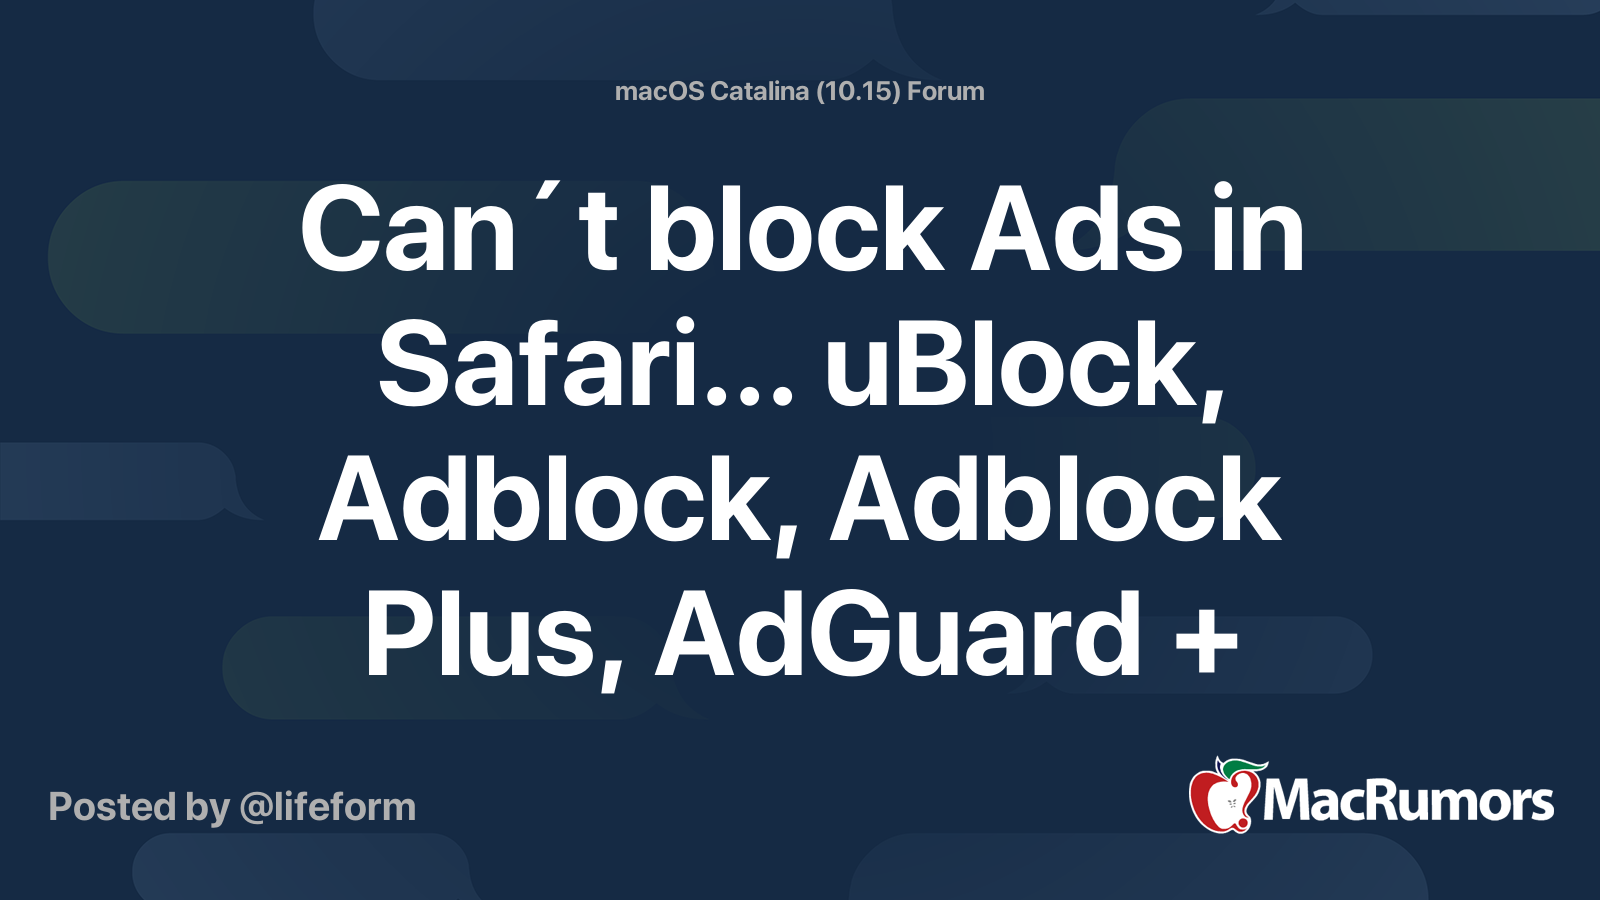 1blocker vs adguard